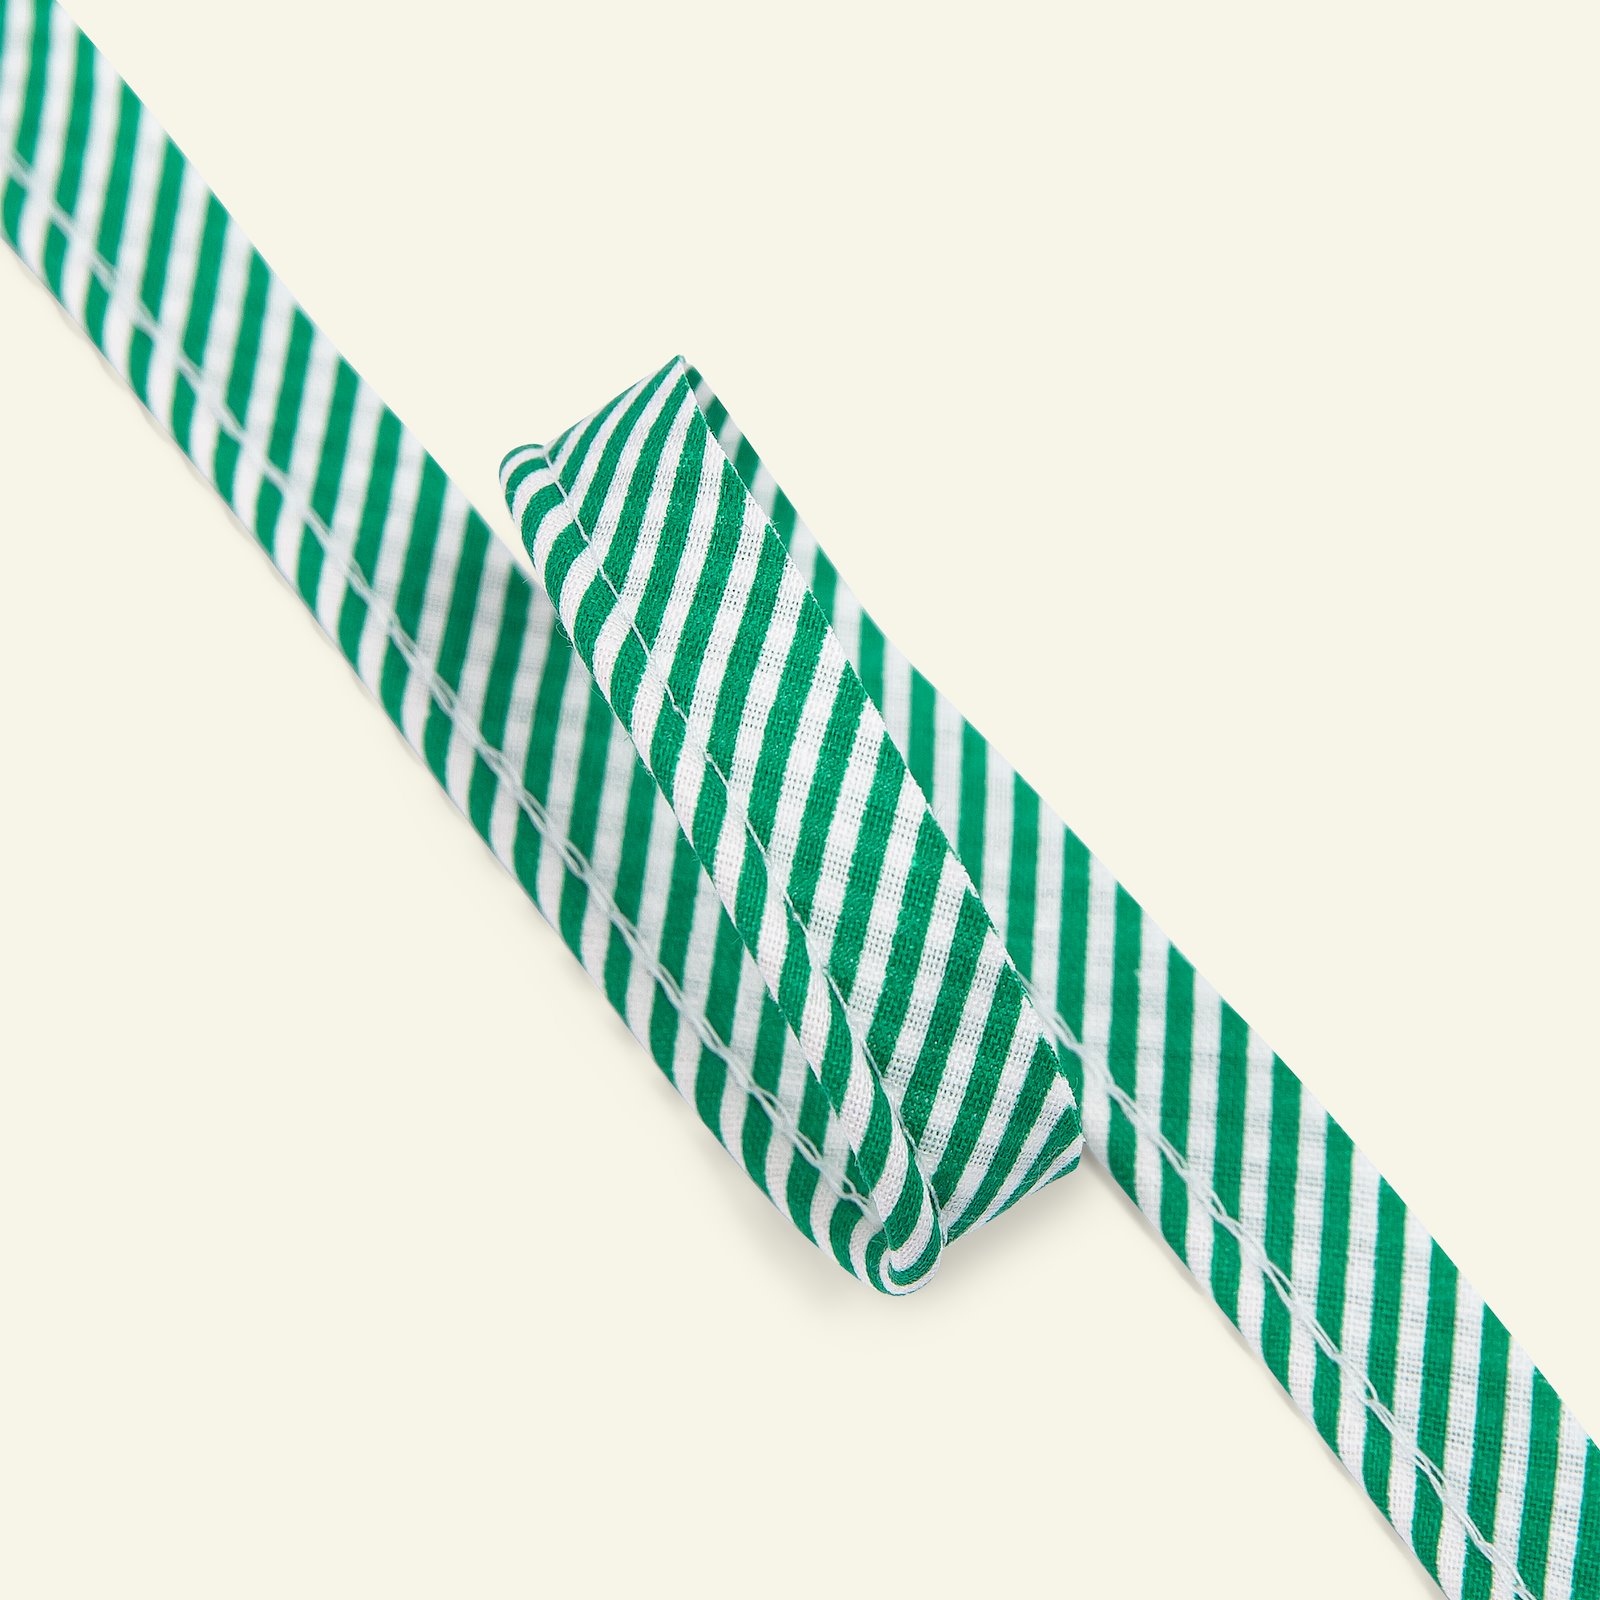 Biesenband gestr. 4mm Grün/Weiß, 3m 71307_pack